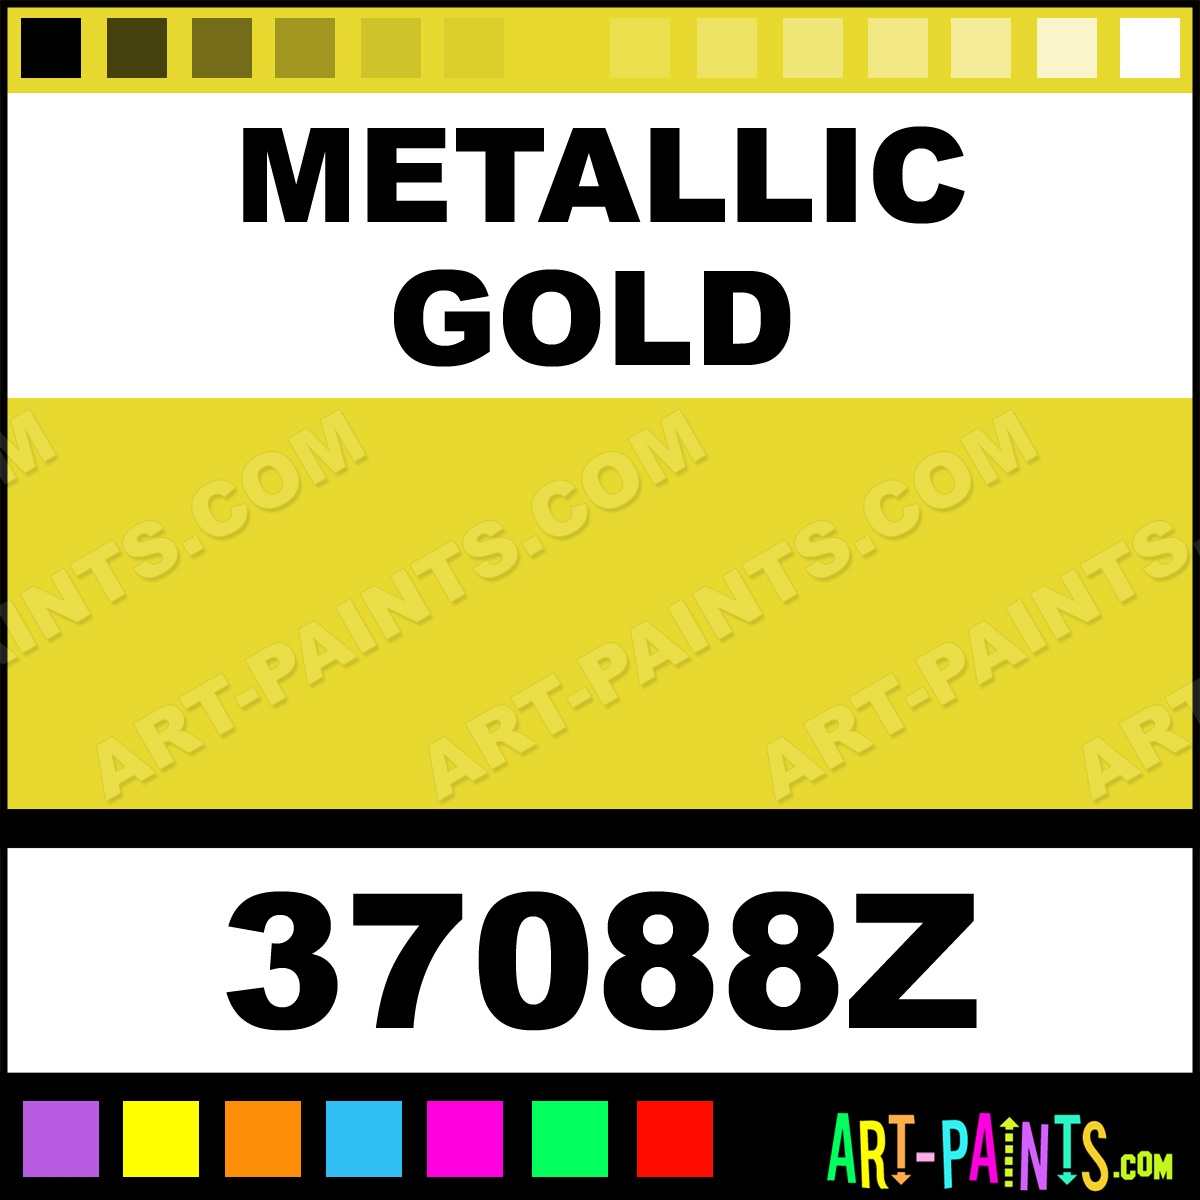 Metallic-Gold-lg.jpg